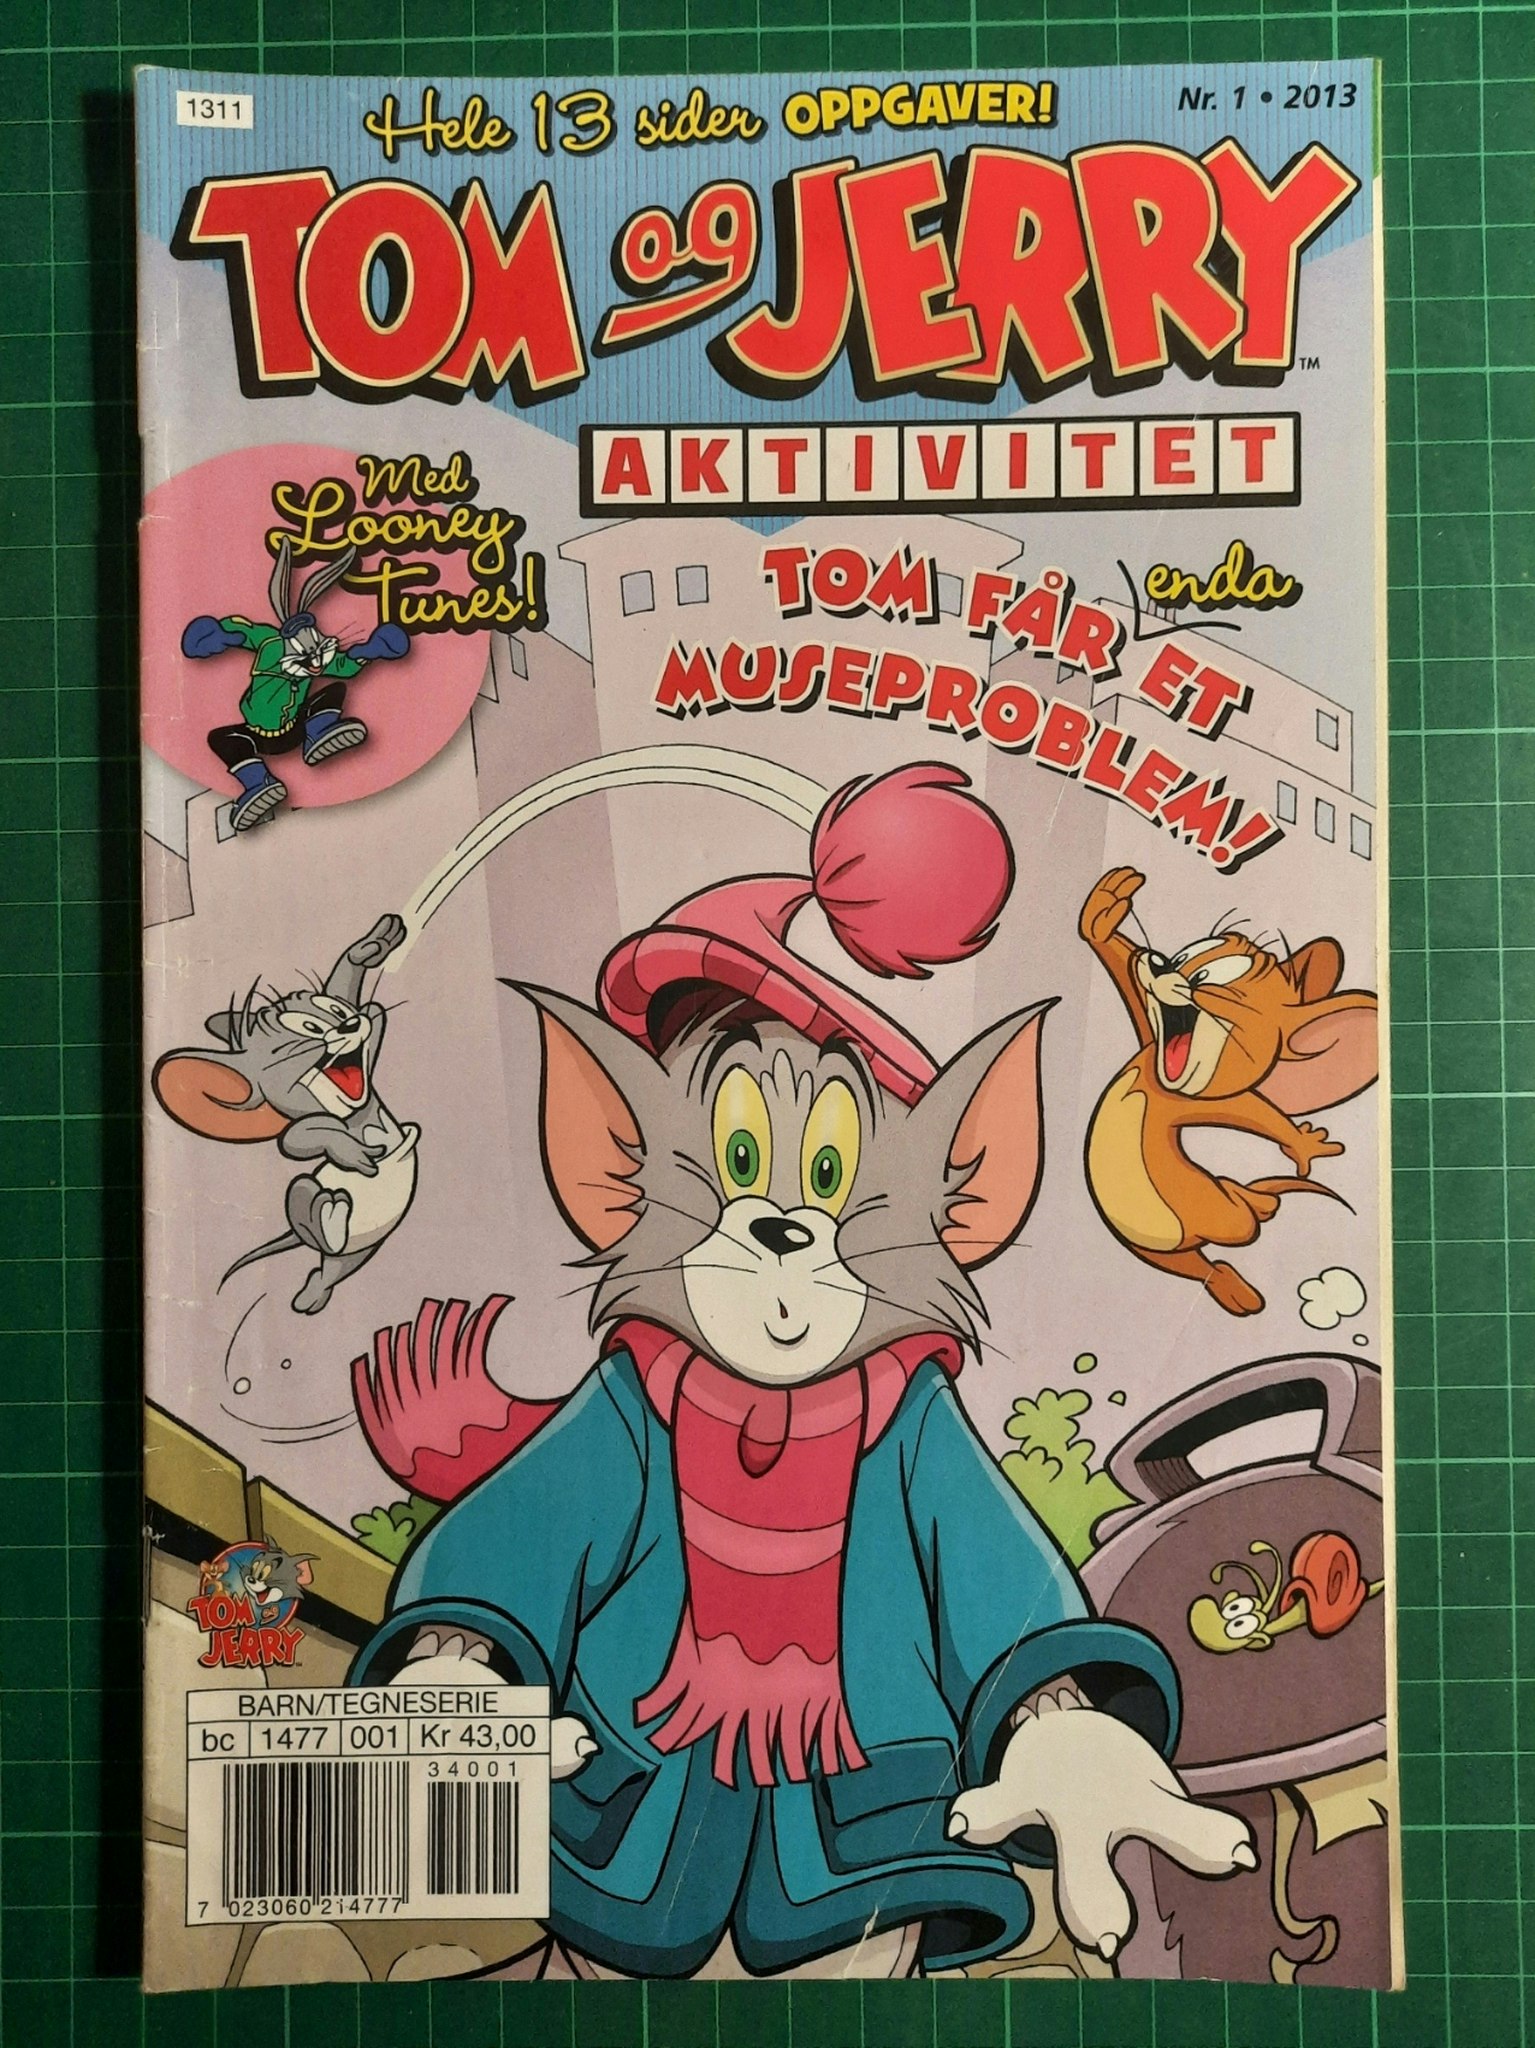 Tom og Jerry aktivitetshefte 2013 - 01